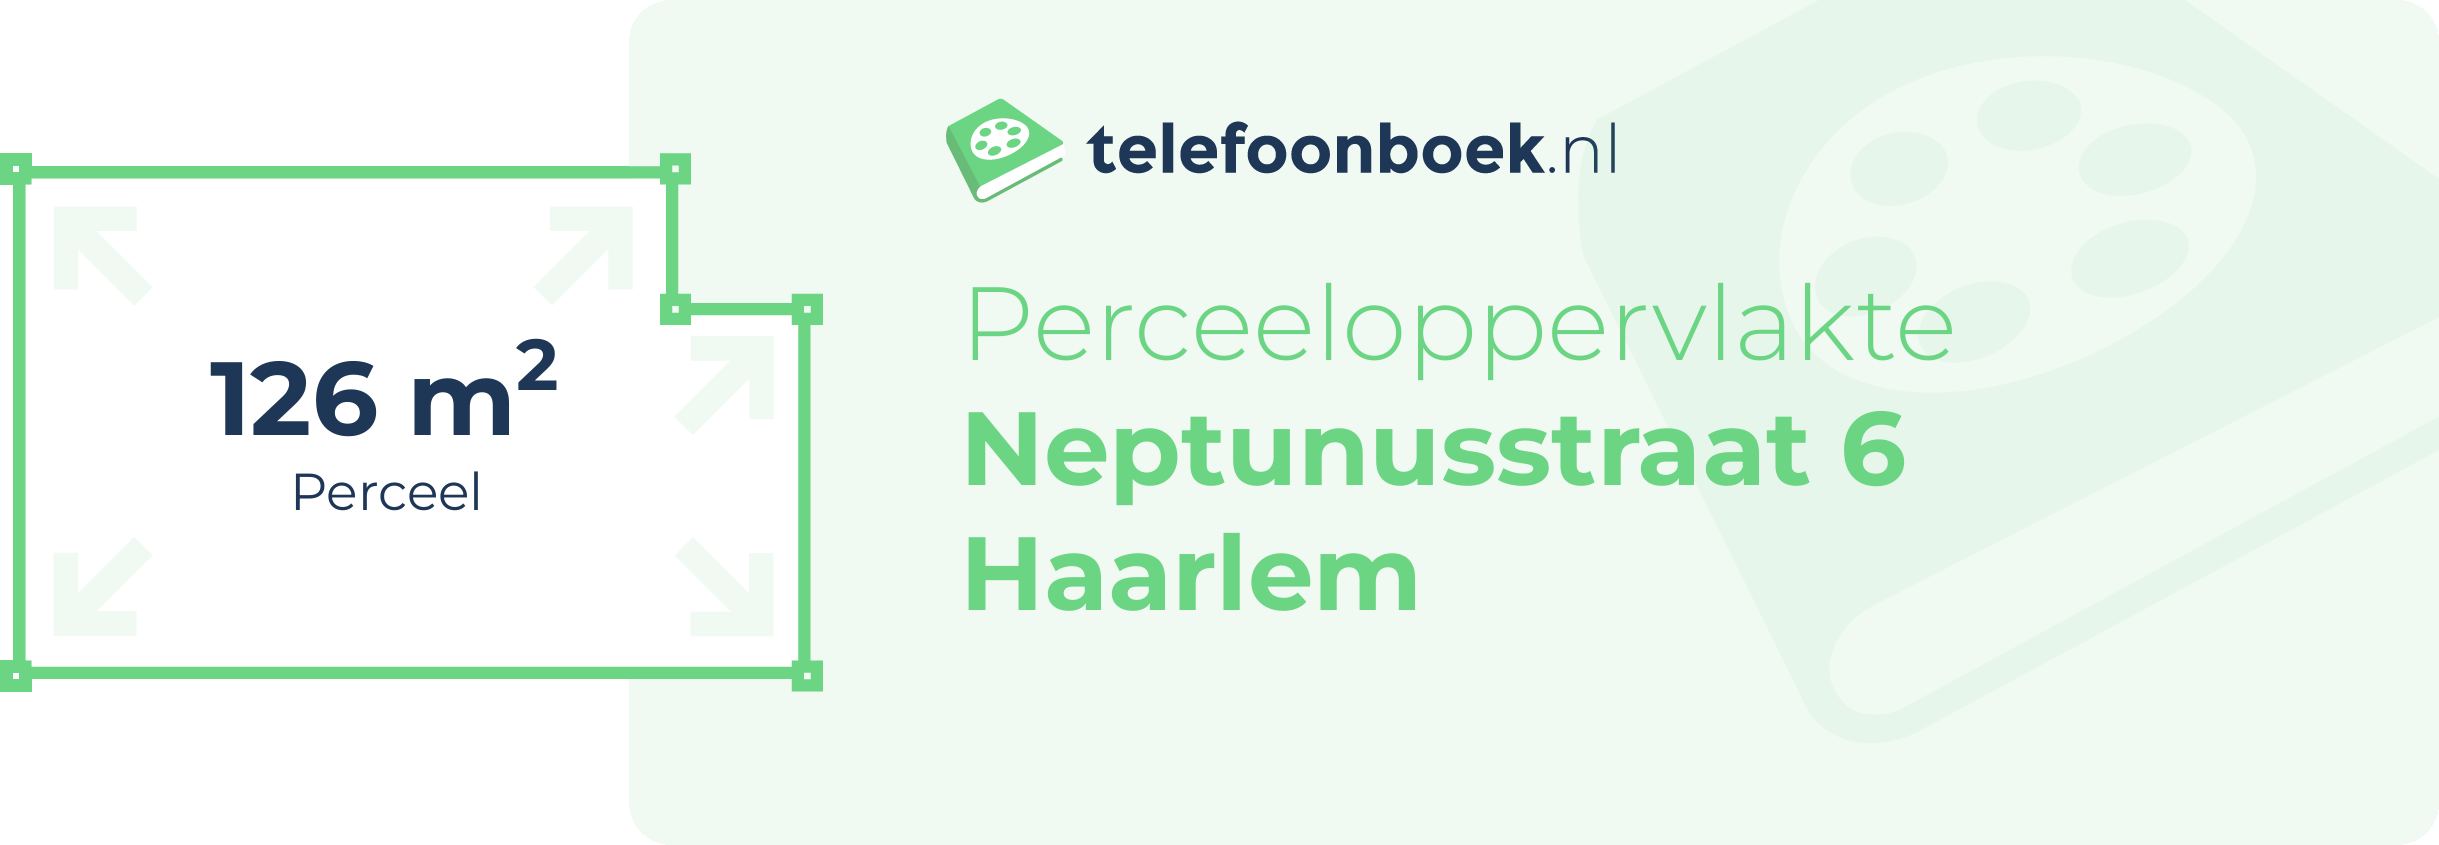 Perceeloppervlakte Neptunusstraat 6 Haarlem